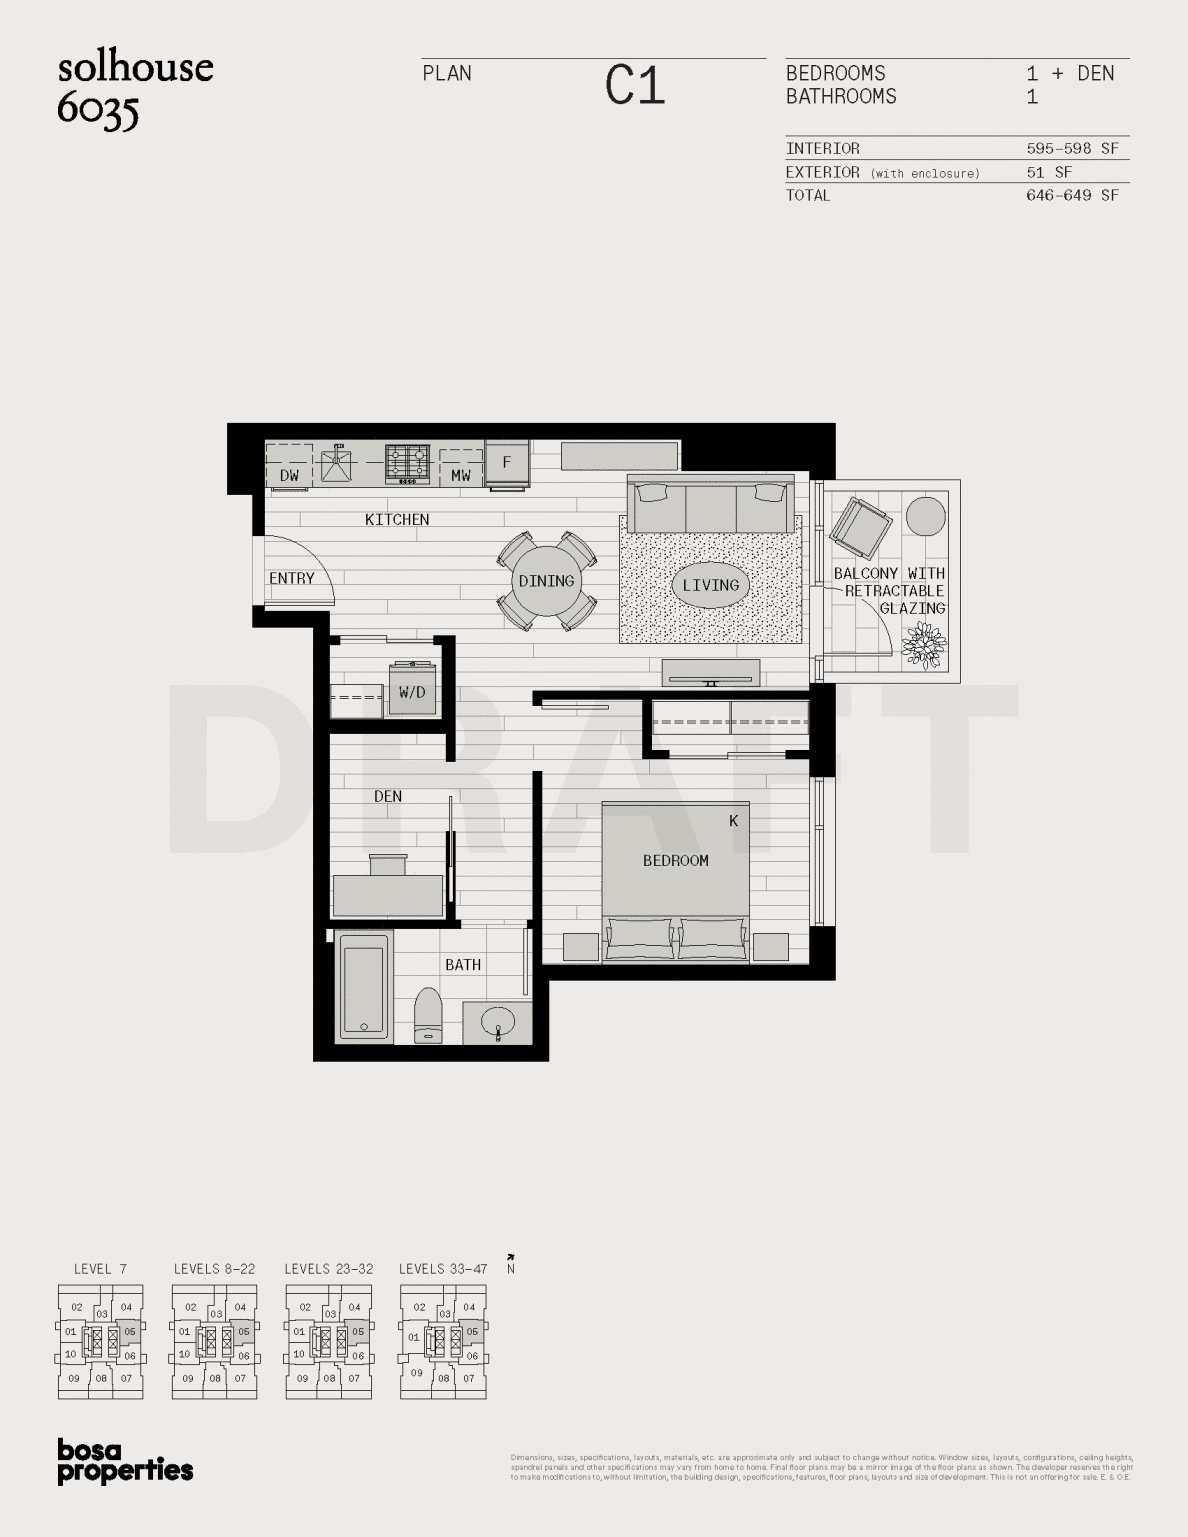 Solhouse Floorplan C1 1 Bedroom + Den